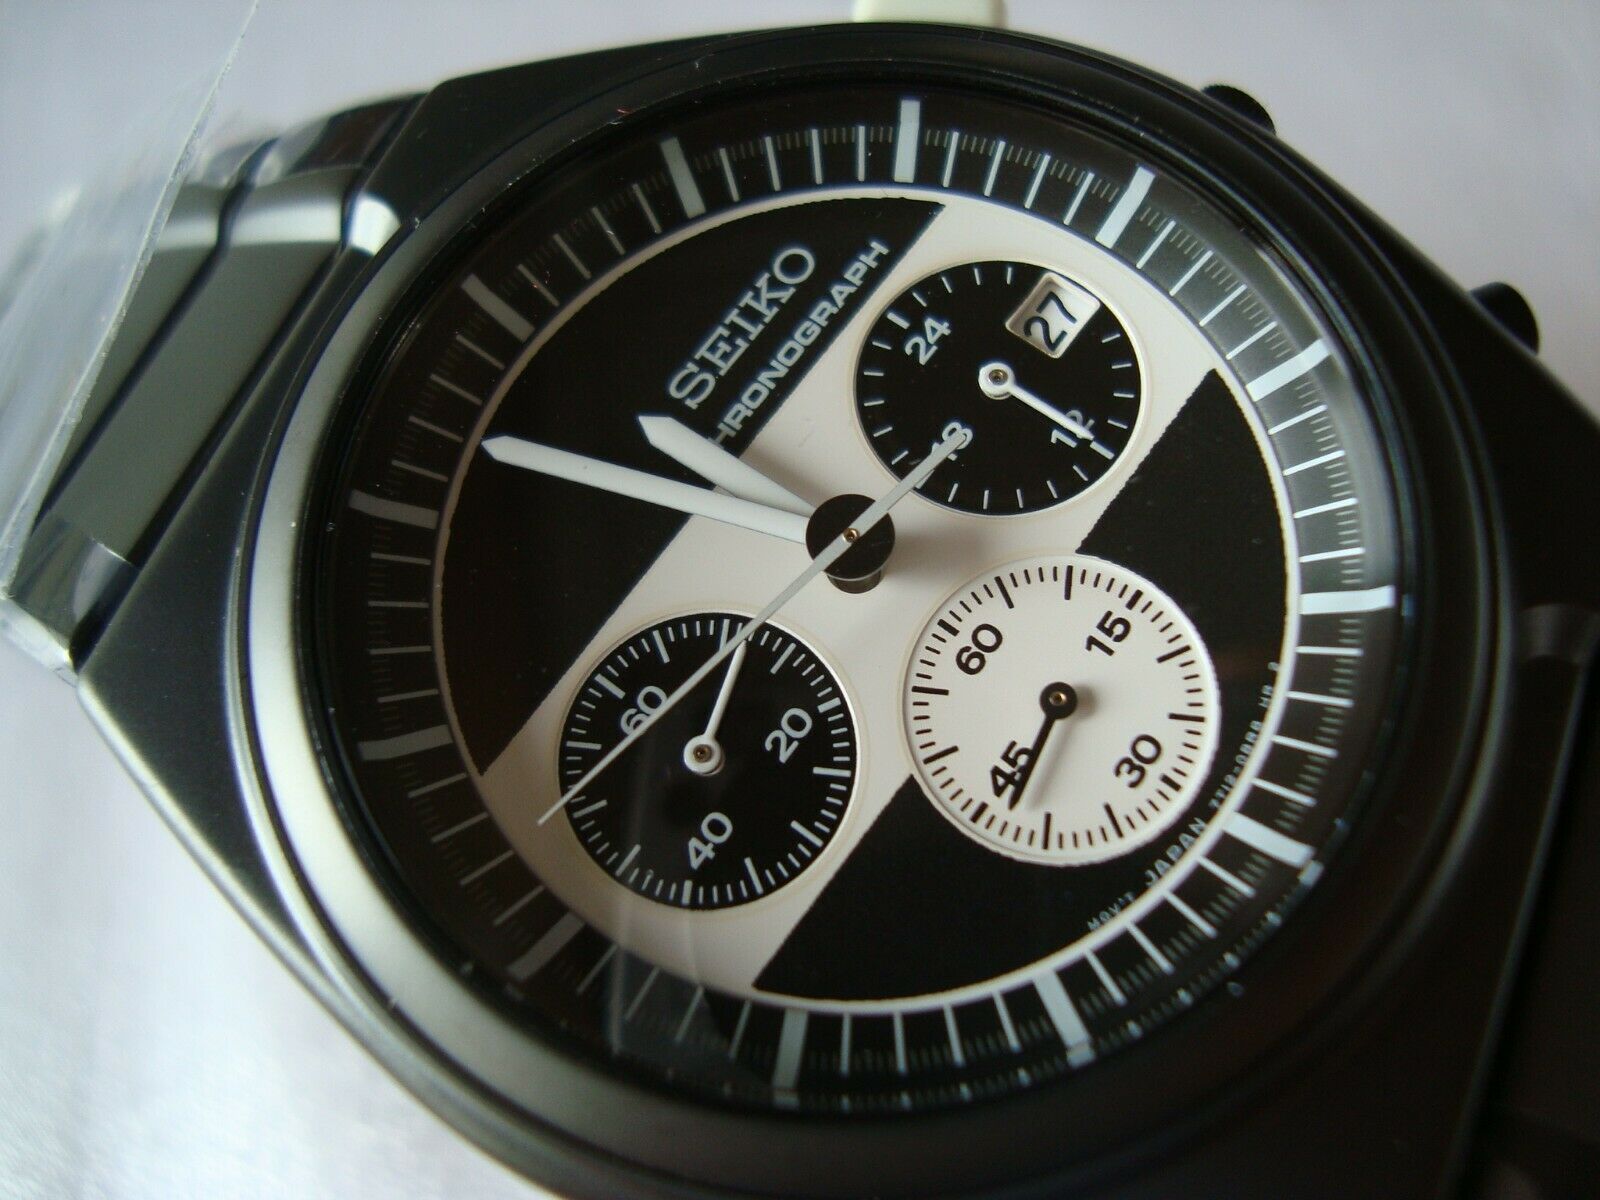 Seiko Giugiaro Design Rider's Chronograph Watch White